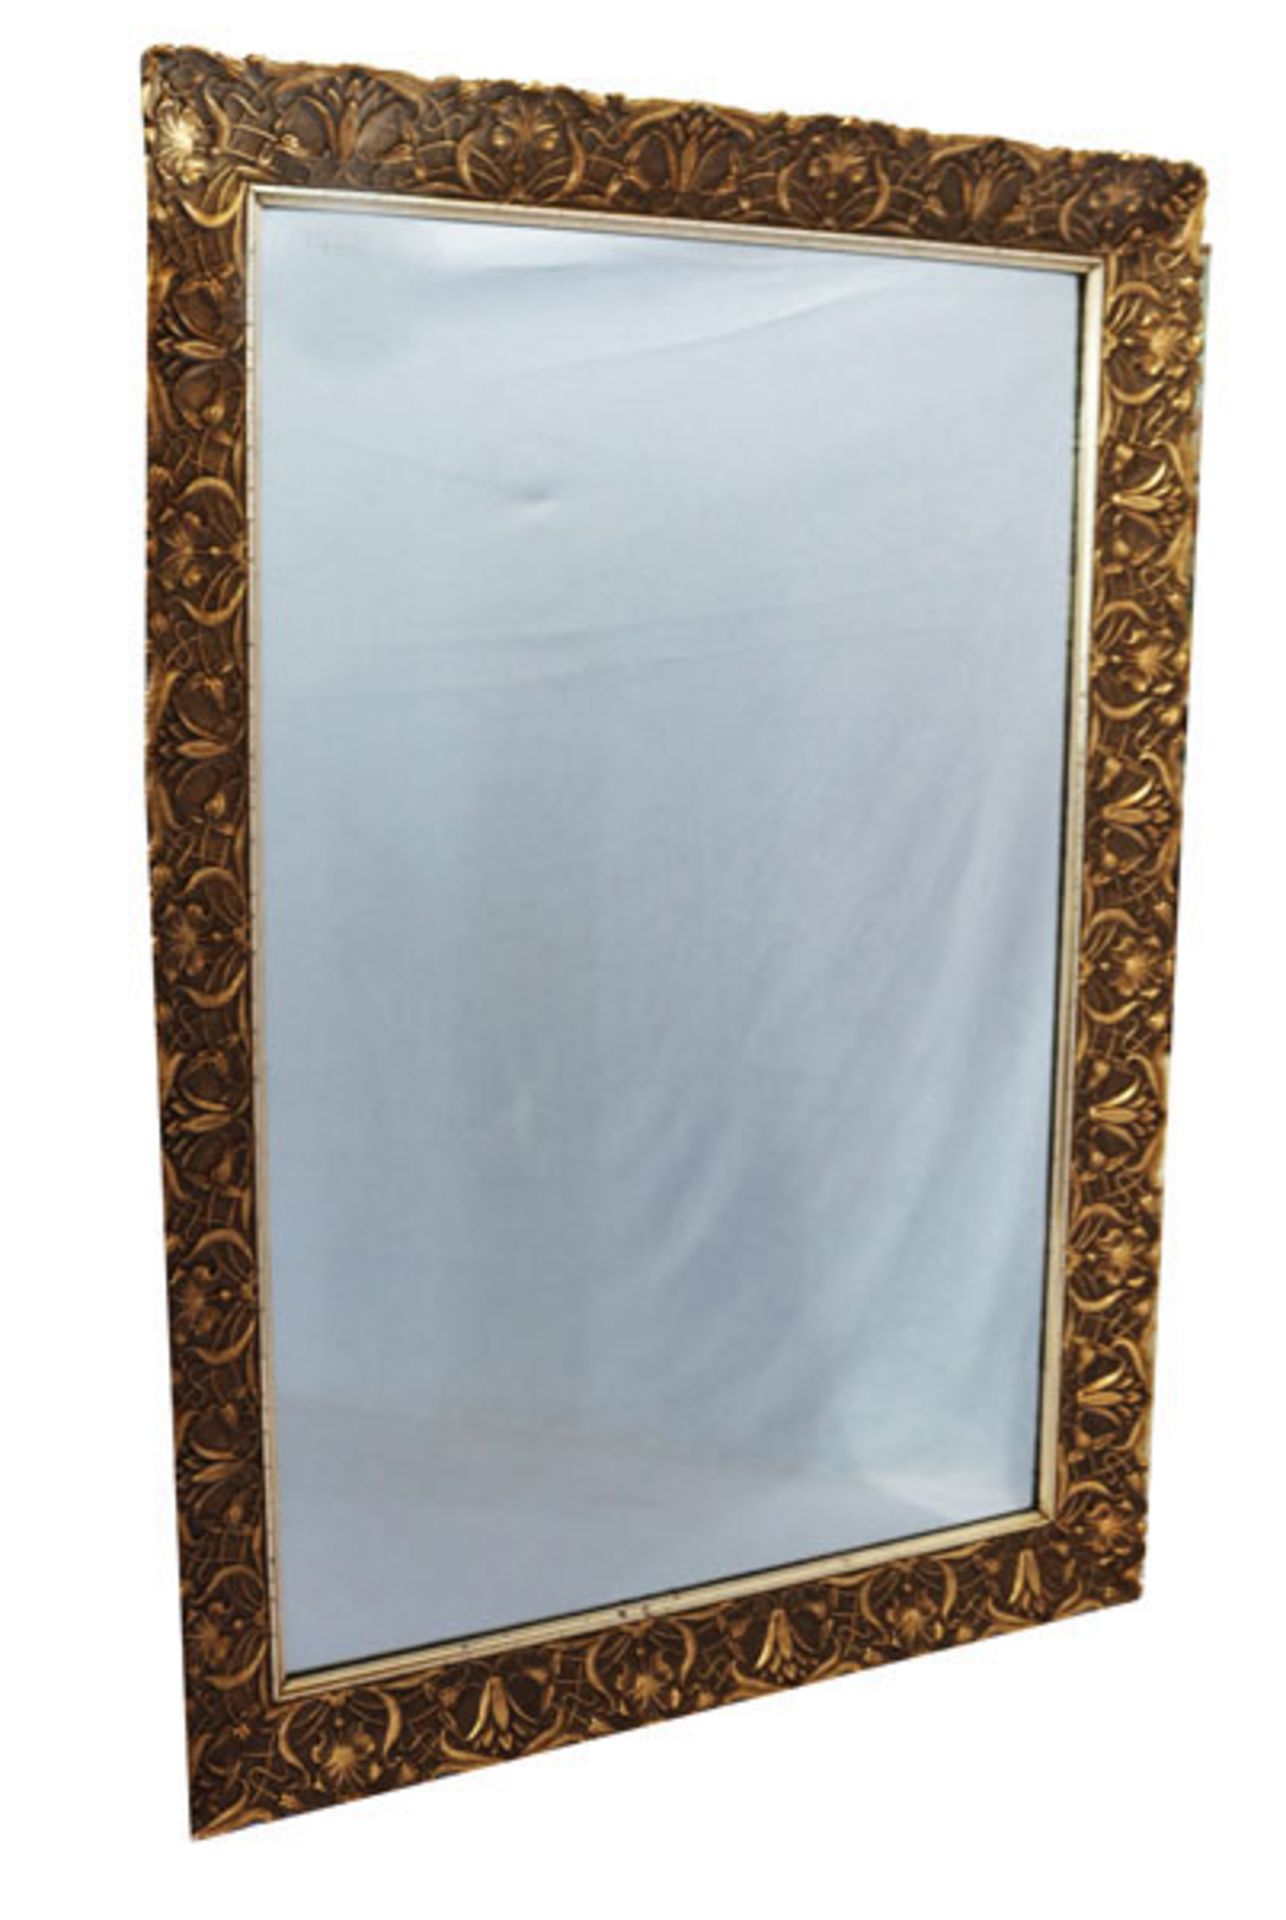 Wandspiegel in dekorativem Holzrahmen mit Golddekor, incl. Rahmen 101 cm x 70 cm, kein Versand,